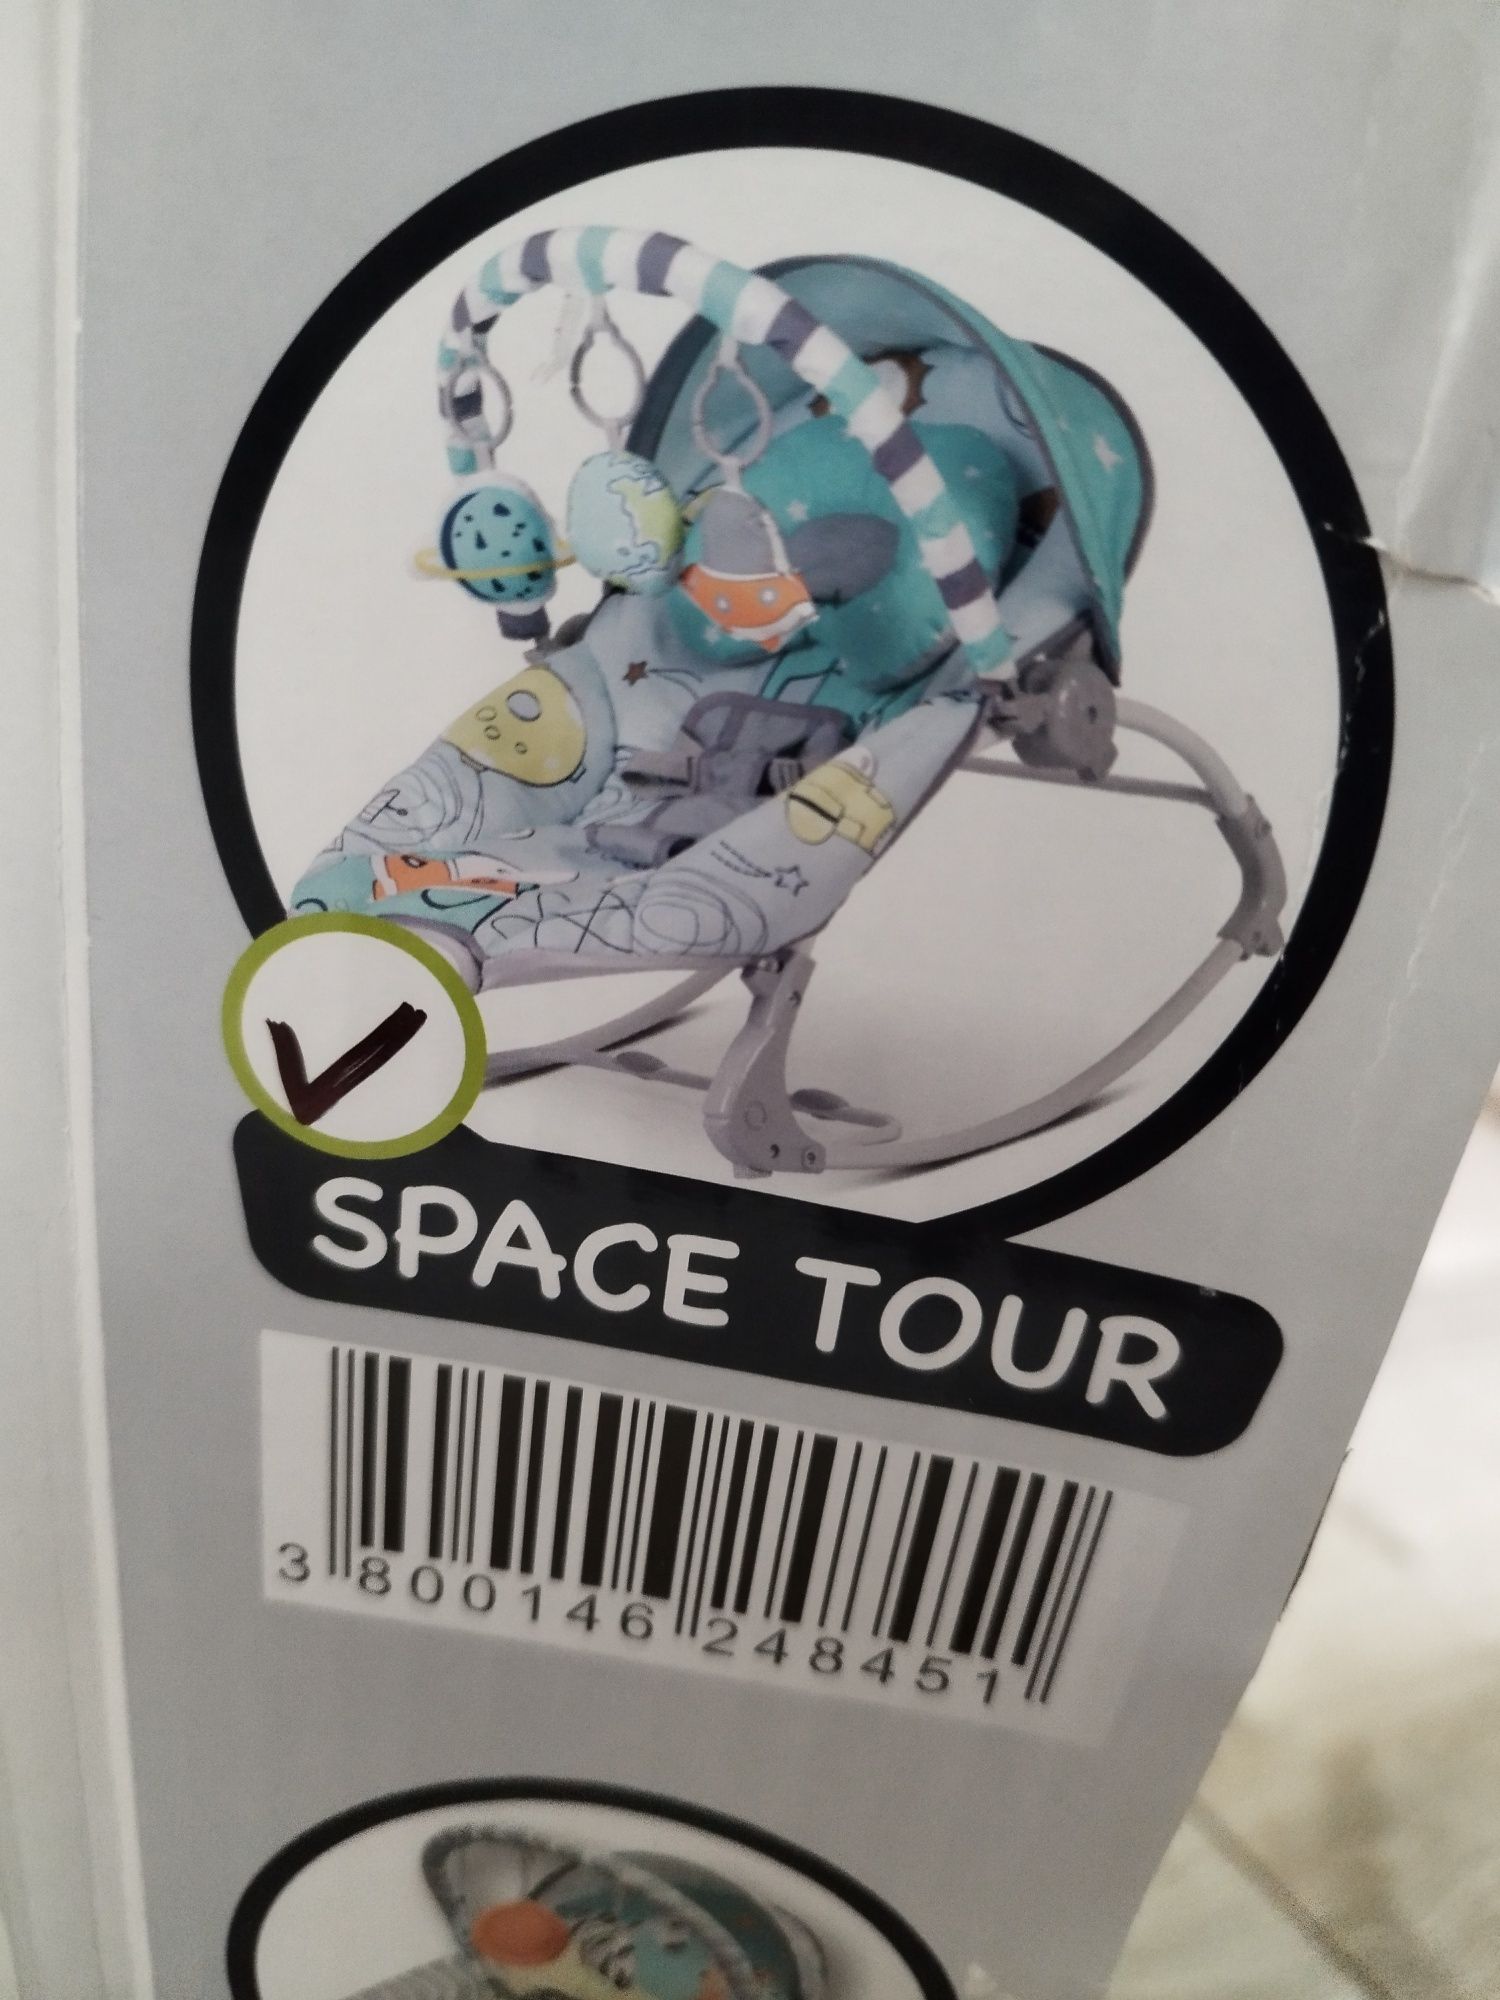 Детски шезлонг Moni - Space tour
ДЕТСКИ ШЕЗЛОНГ SPACE TOUR
Д